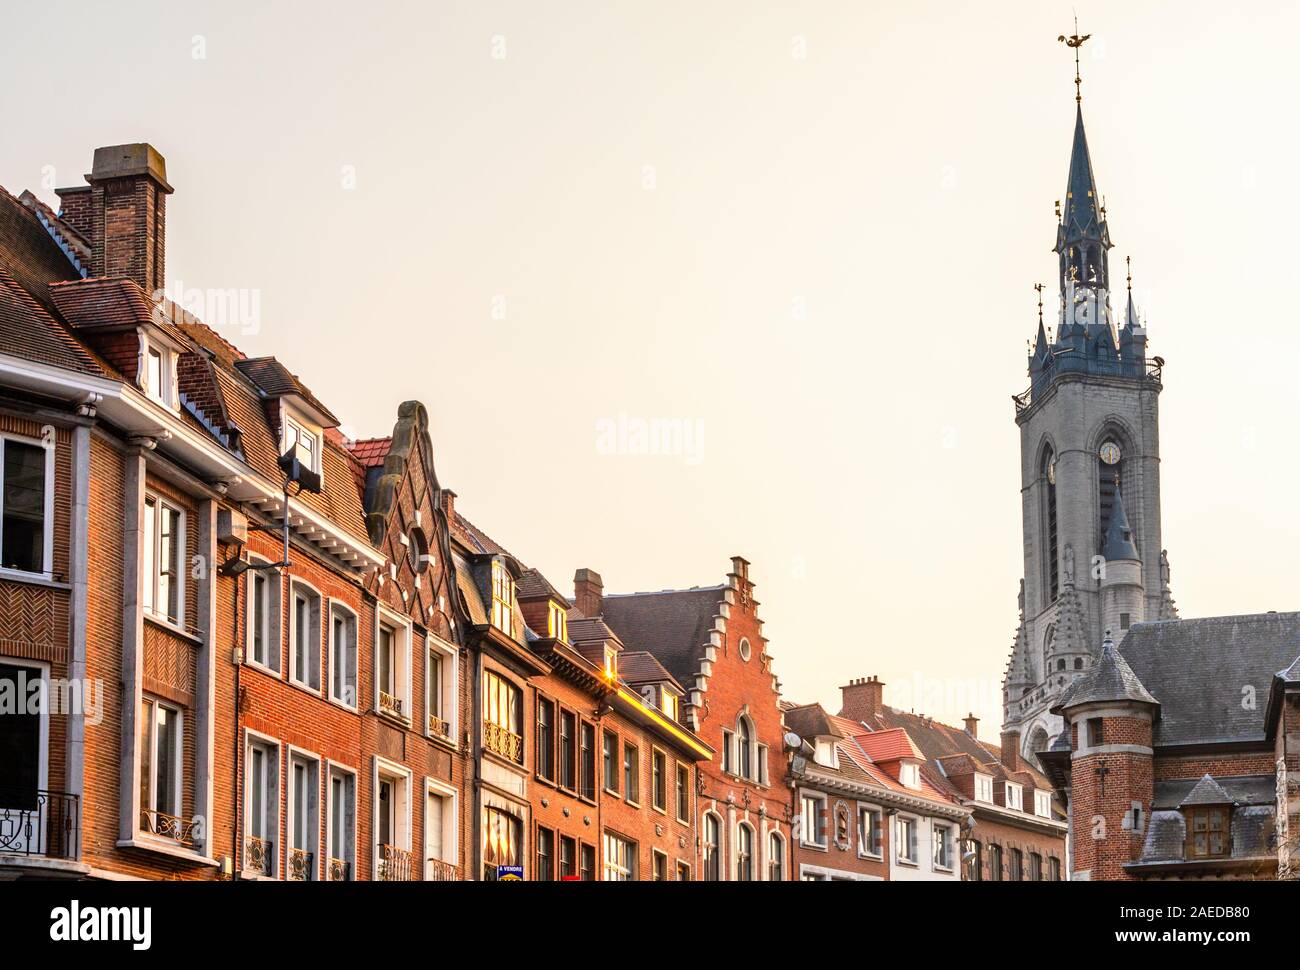 Haut clocher médiéval qui s'élève au-dessus de la rue avec de vieilles maisons européennes, Tournai, Belgique, Région Wallonne Banque D'Images